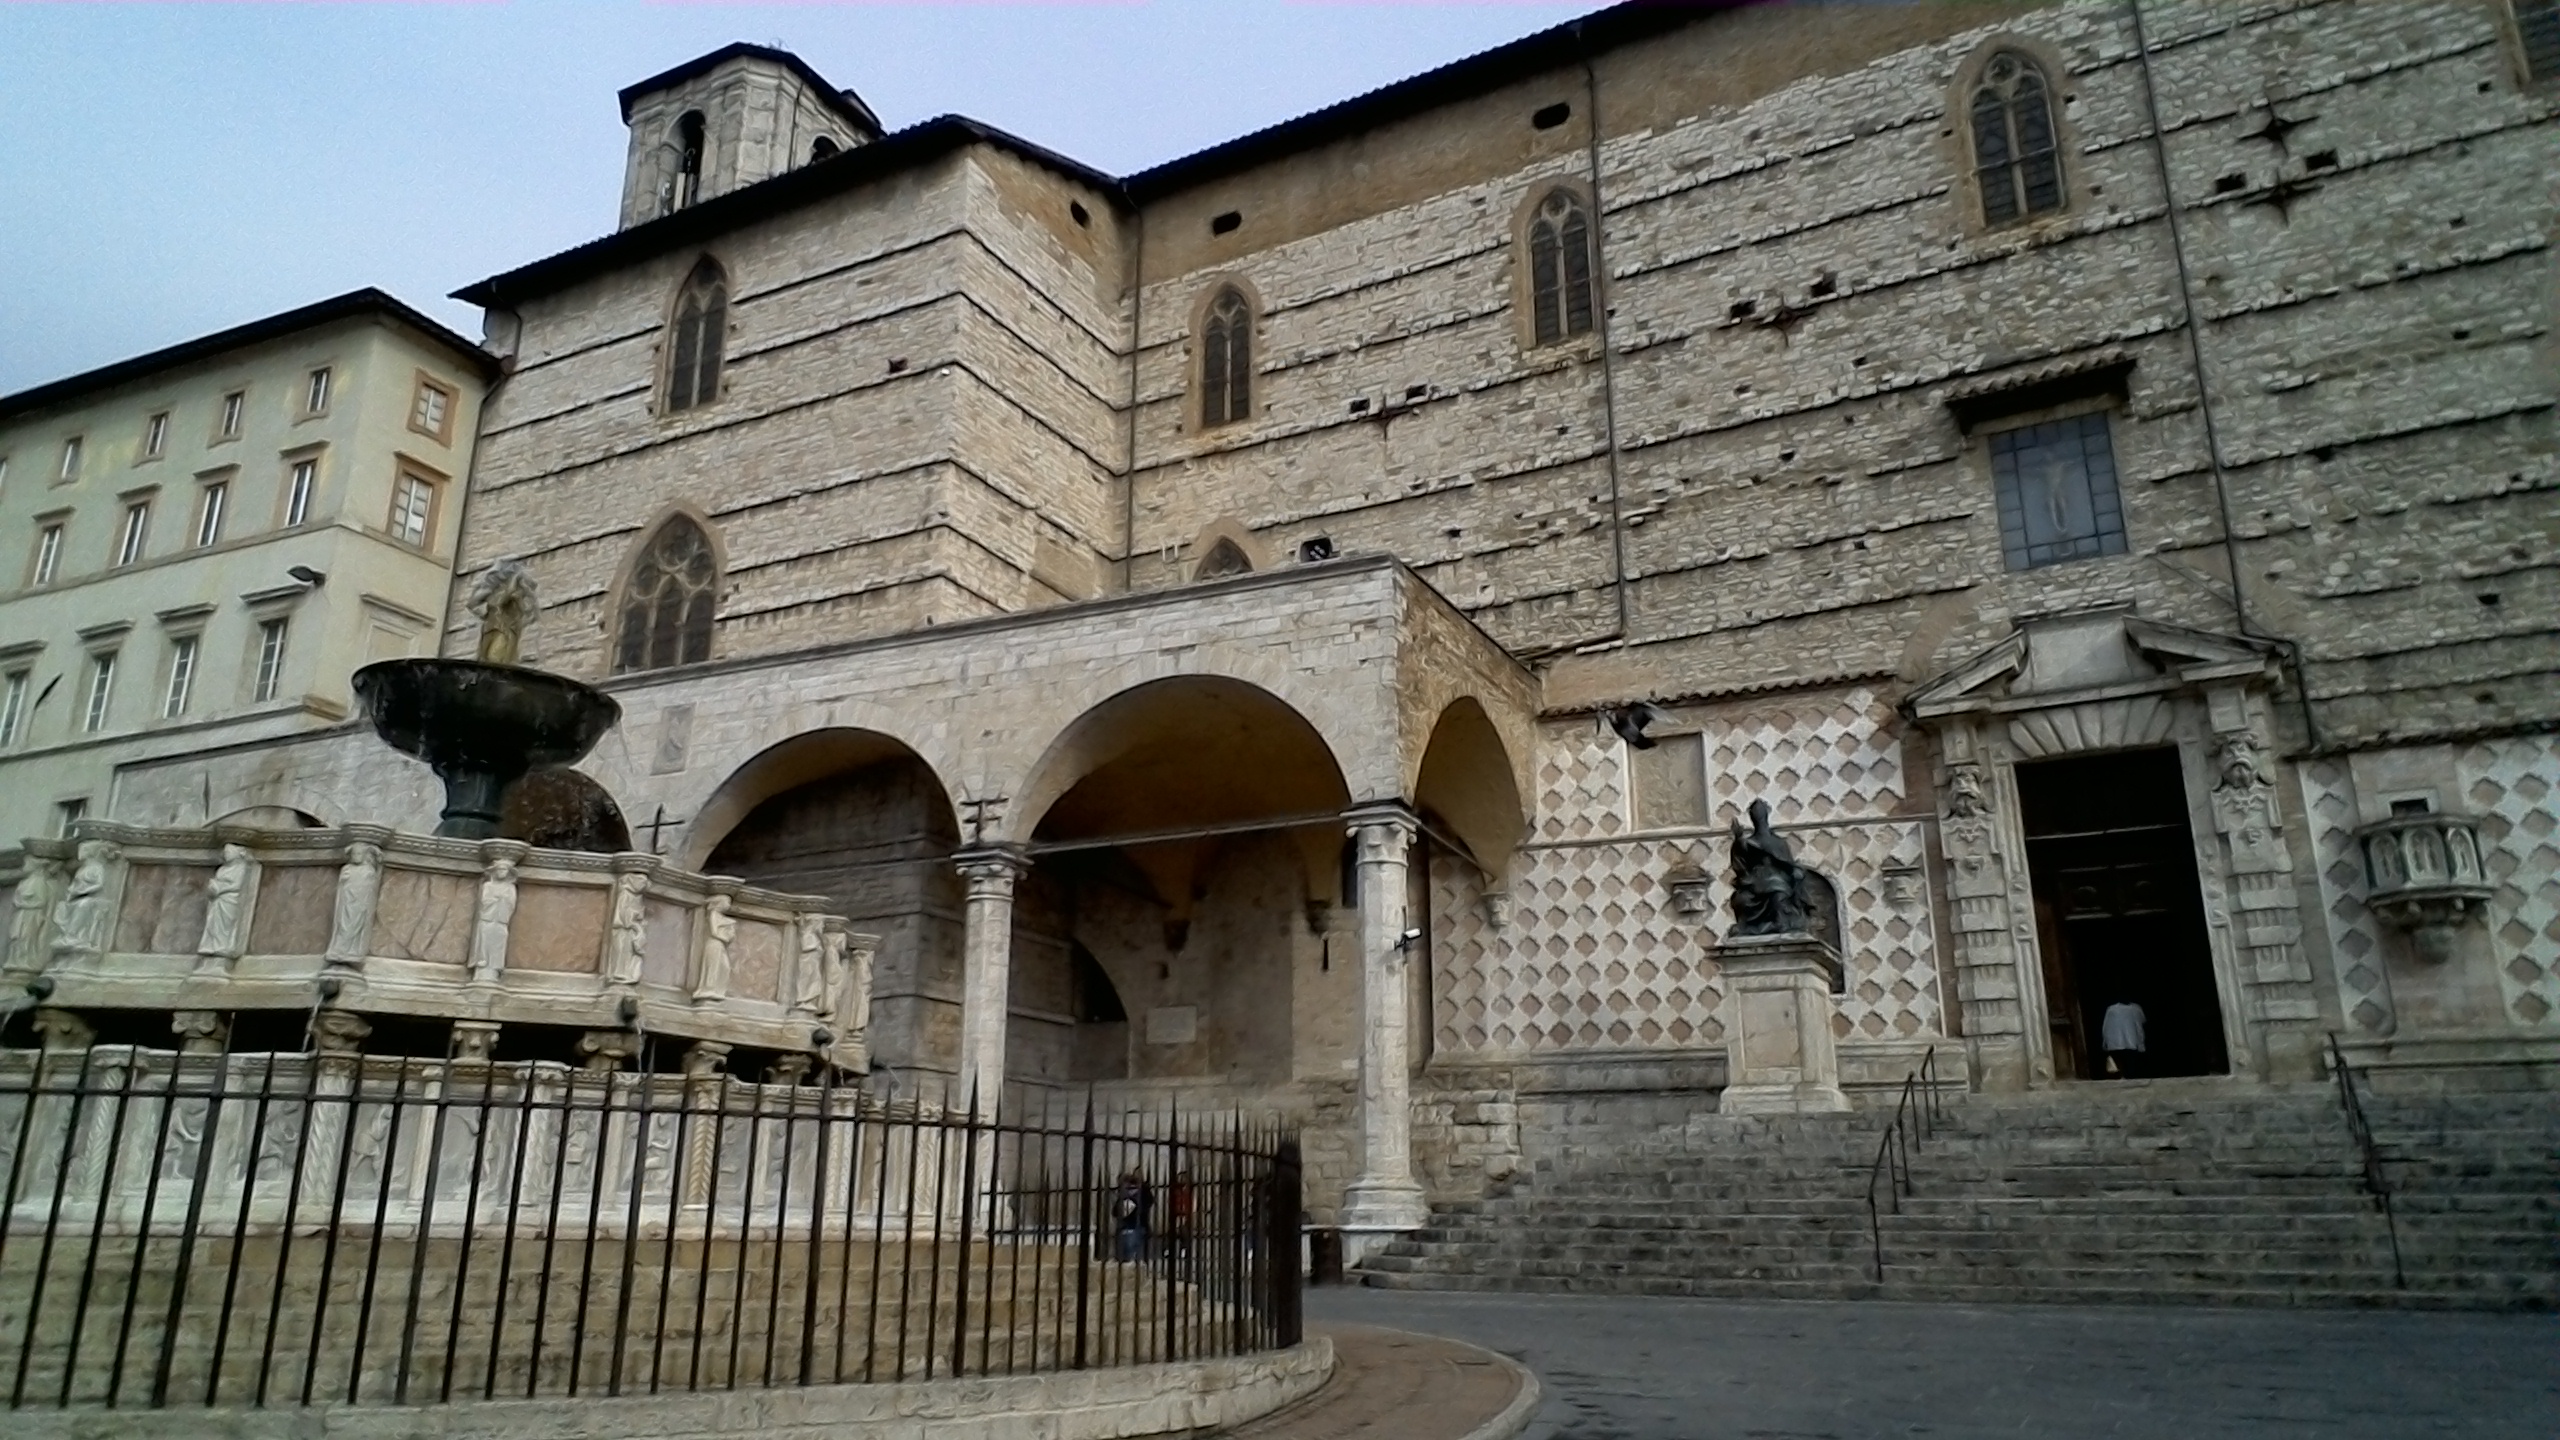 Fontana Maggiore and Cattedrale San Lorenzo